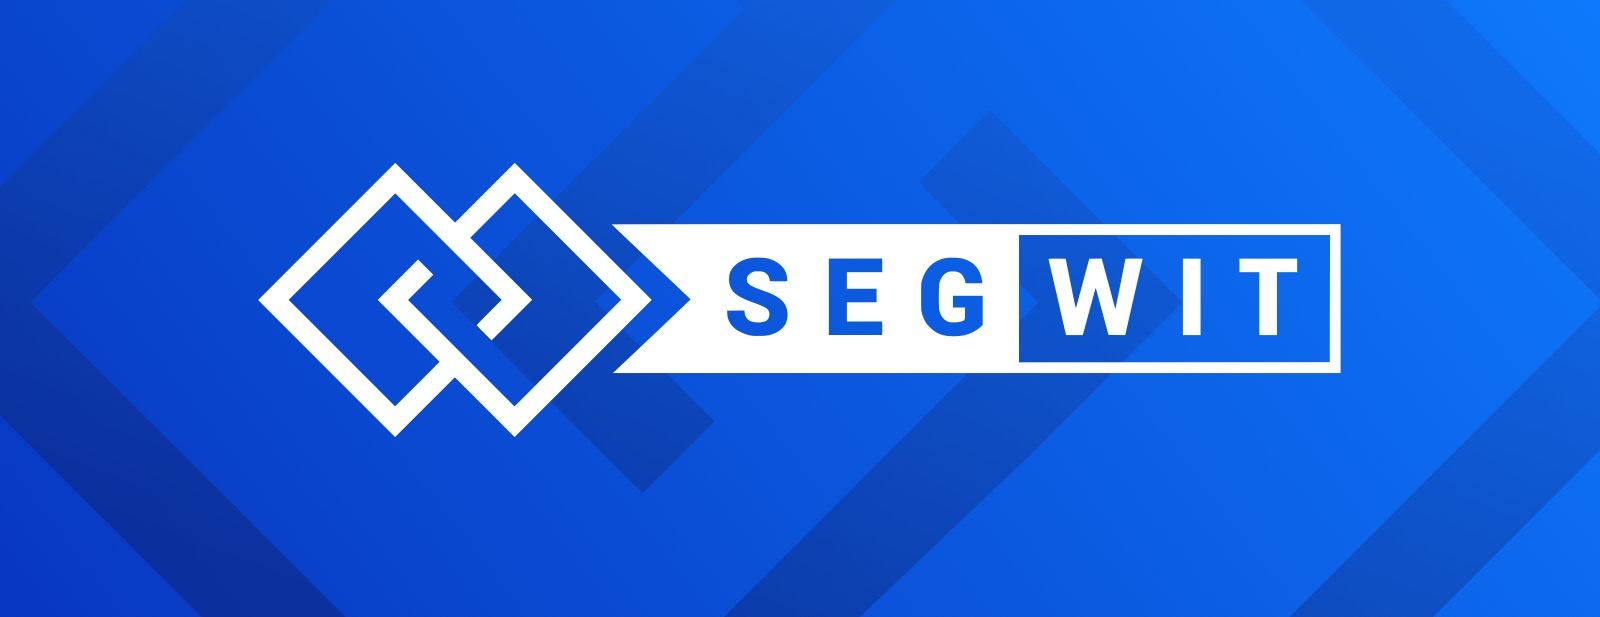 Bitcoin tinklo komisiniai krenta dėl augančio SegWit palaikymo – IT naujienos